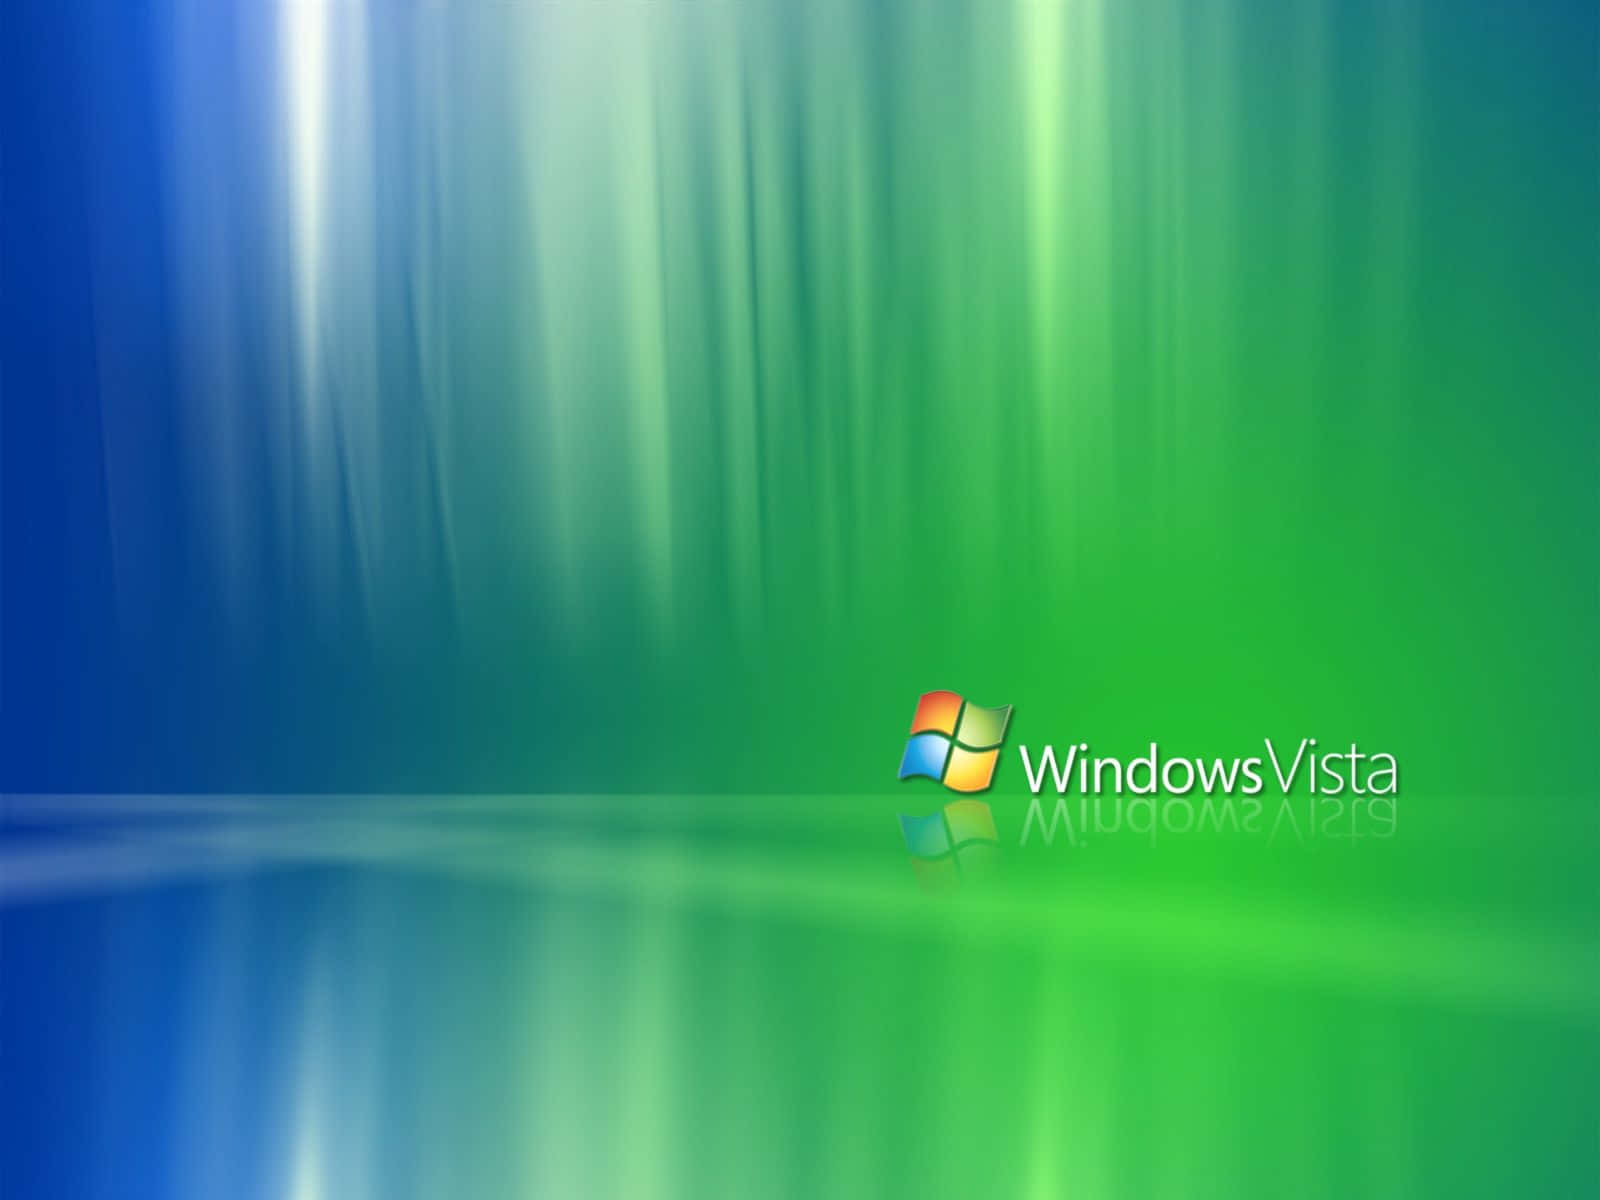 Windows Vista viser et rullerende bakkelandskab med skyer smukke.